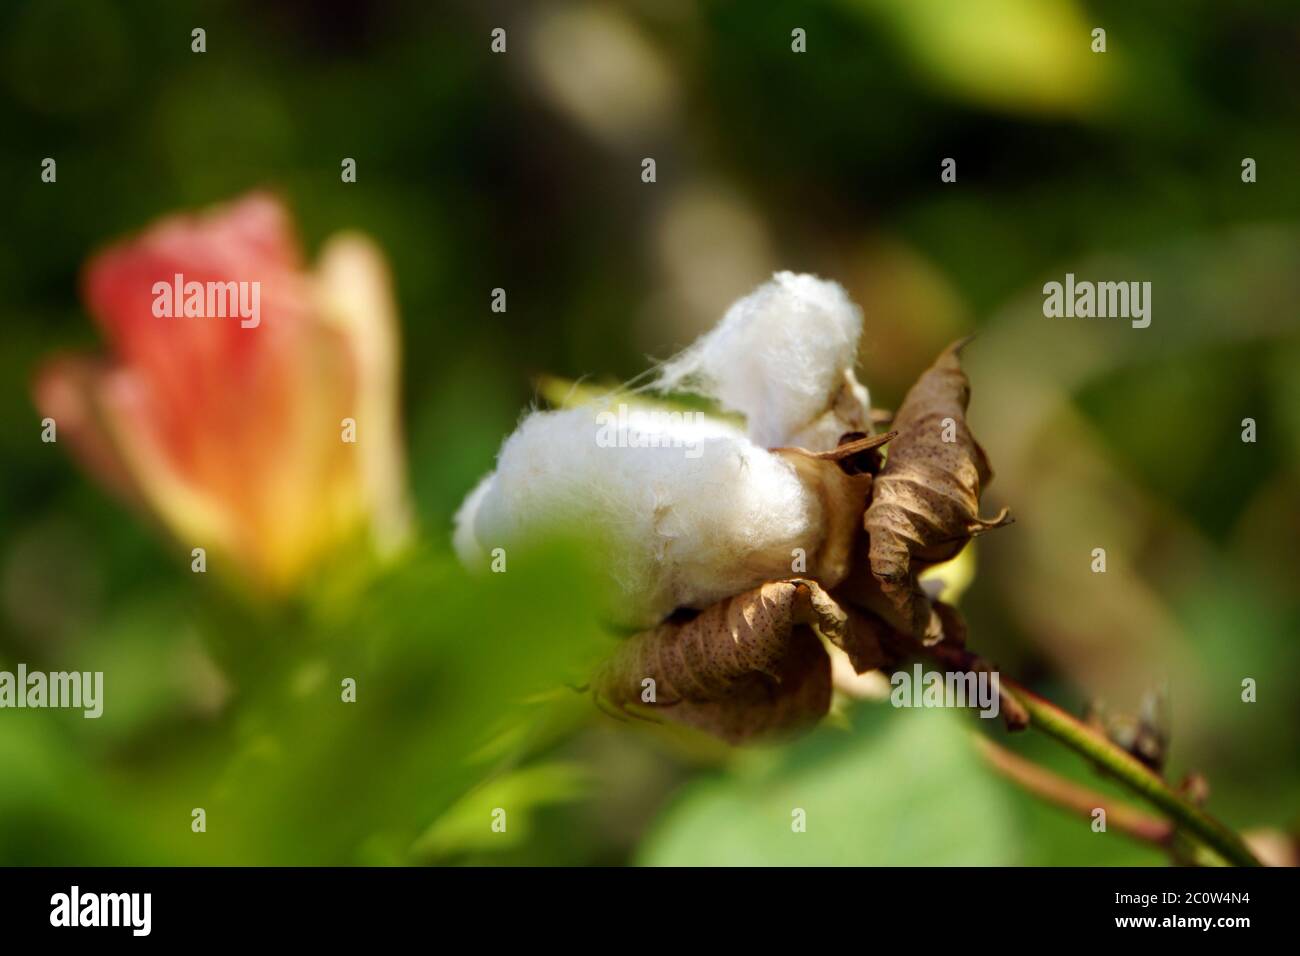 Flower of cotton (Gossypium arboreum) Stock Photo